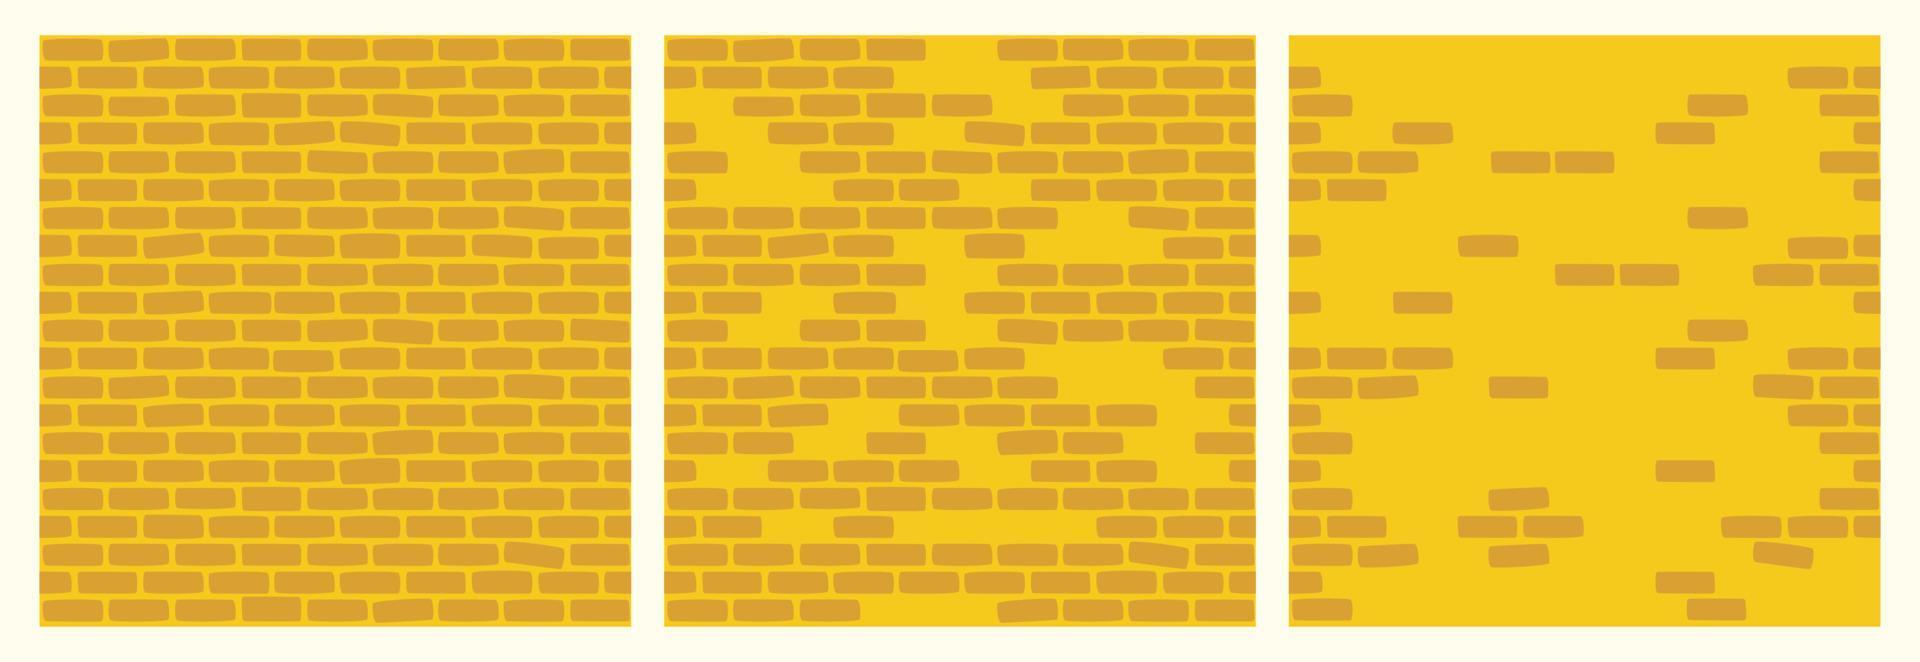 ensemble de motifs de mur de briques de couleur jaune. la construction de bâtiments bloque la collection d'arrière-plan transparente pour le jeu, la conception web, le textile, les impressions et les cafés. vecteur